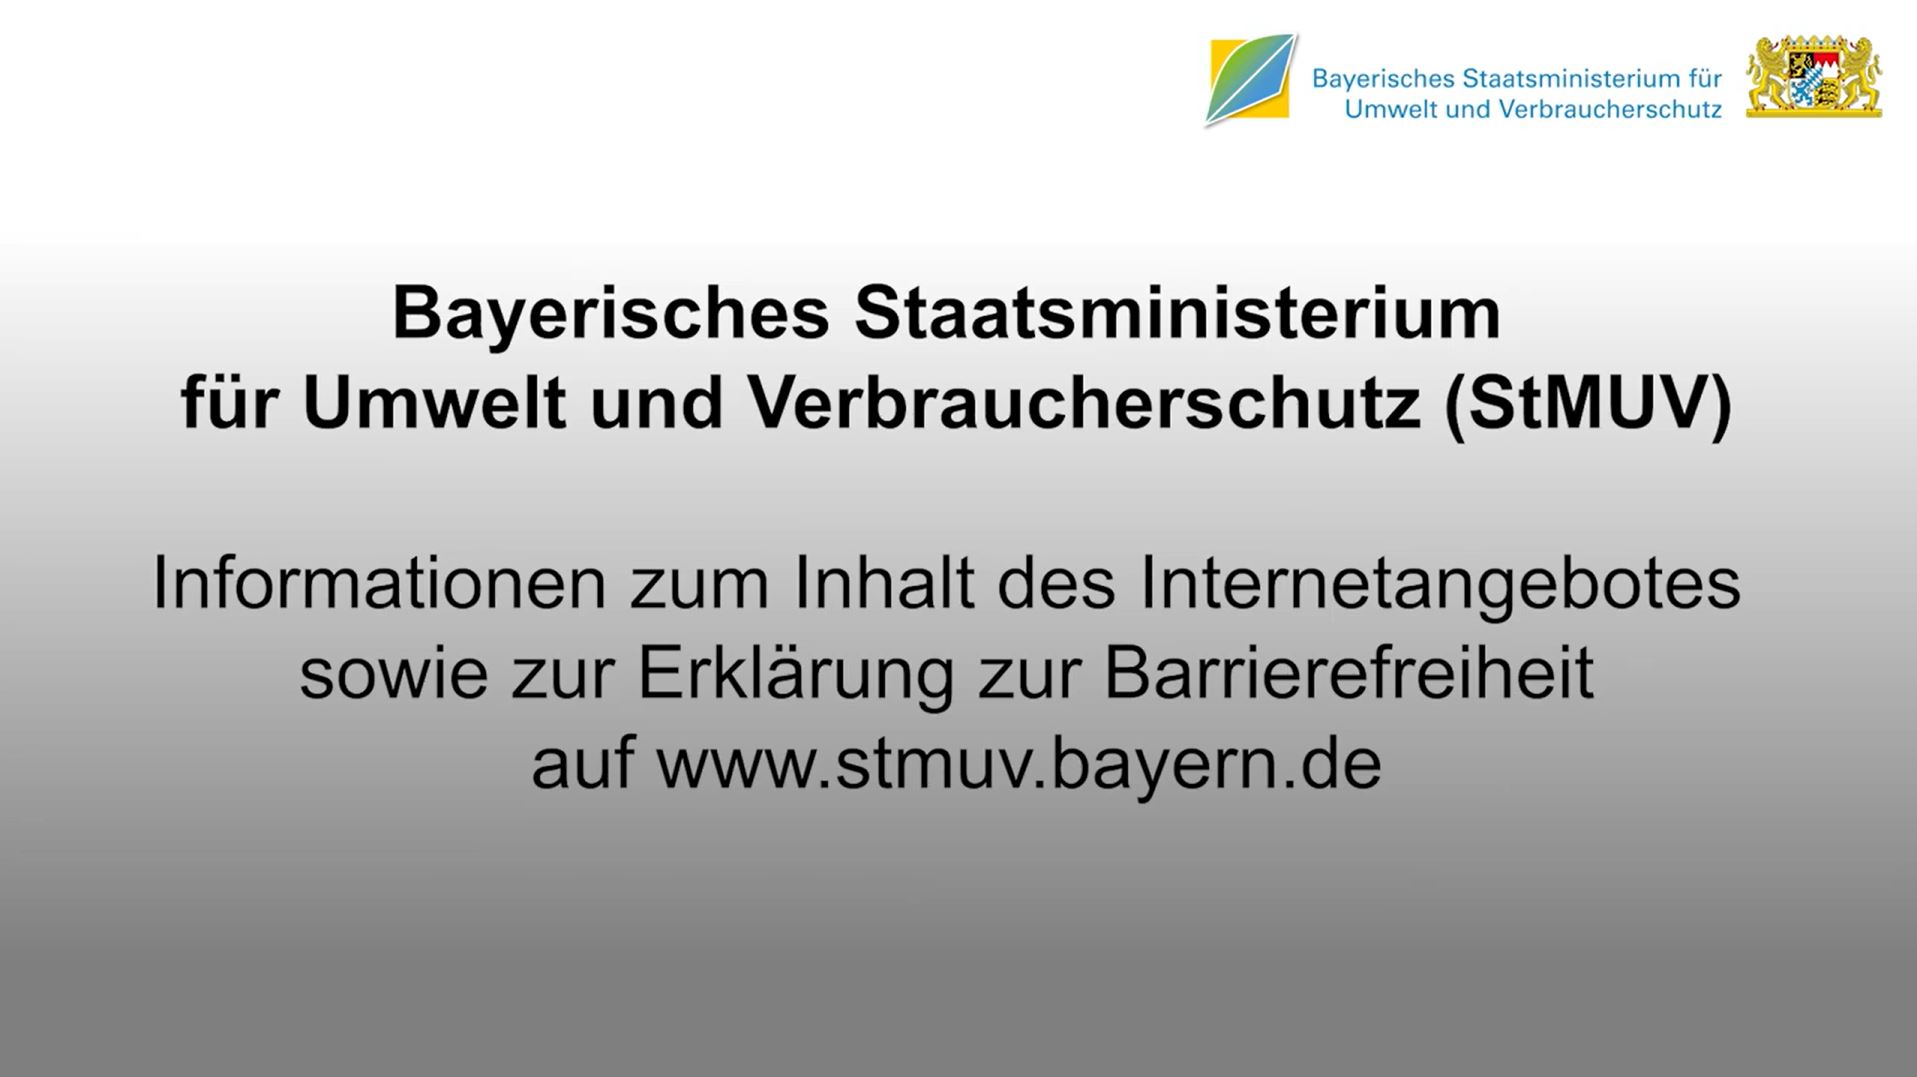 Das Video informiert über das Bayerische Staatsministerium für Umwelt und Verbraucherschutz.